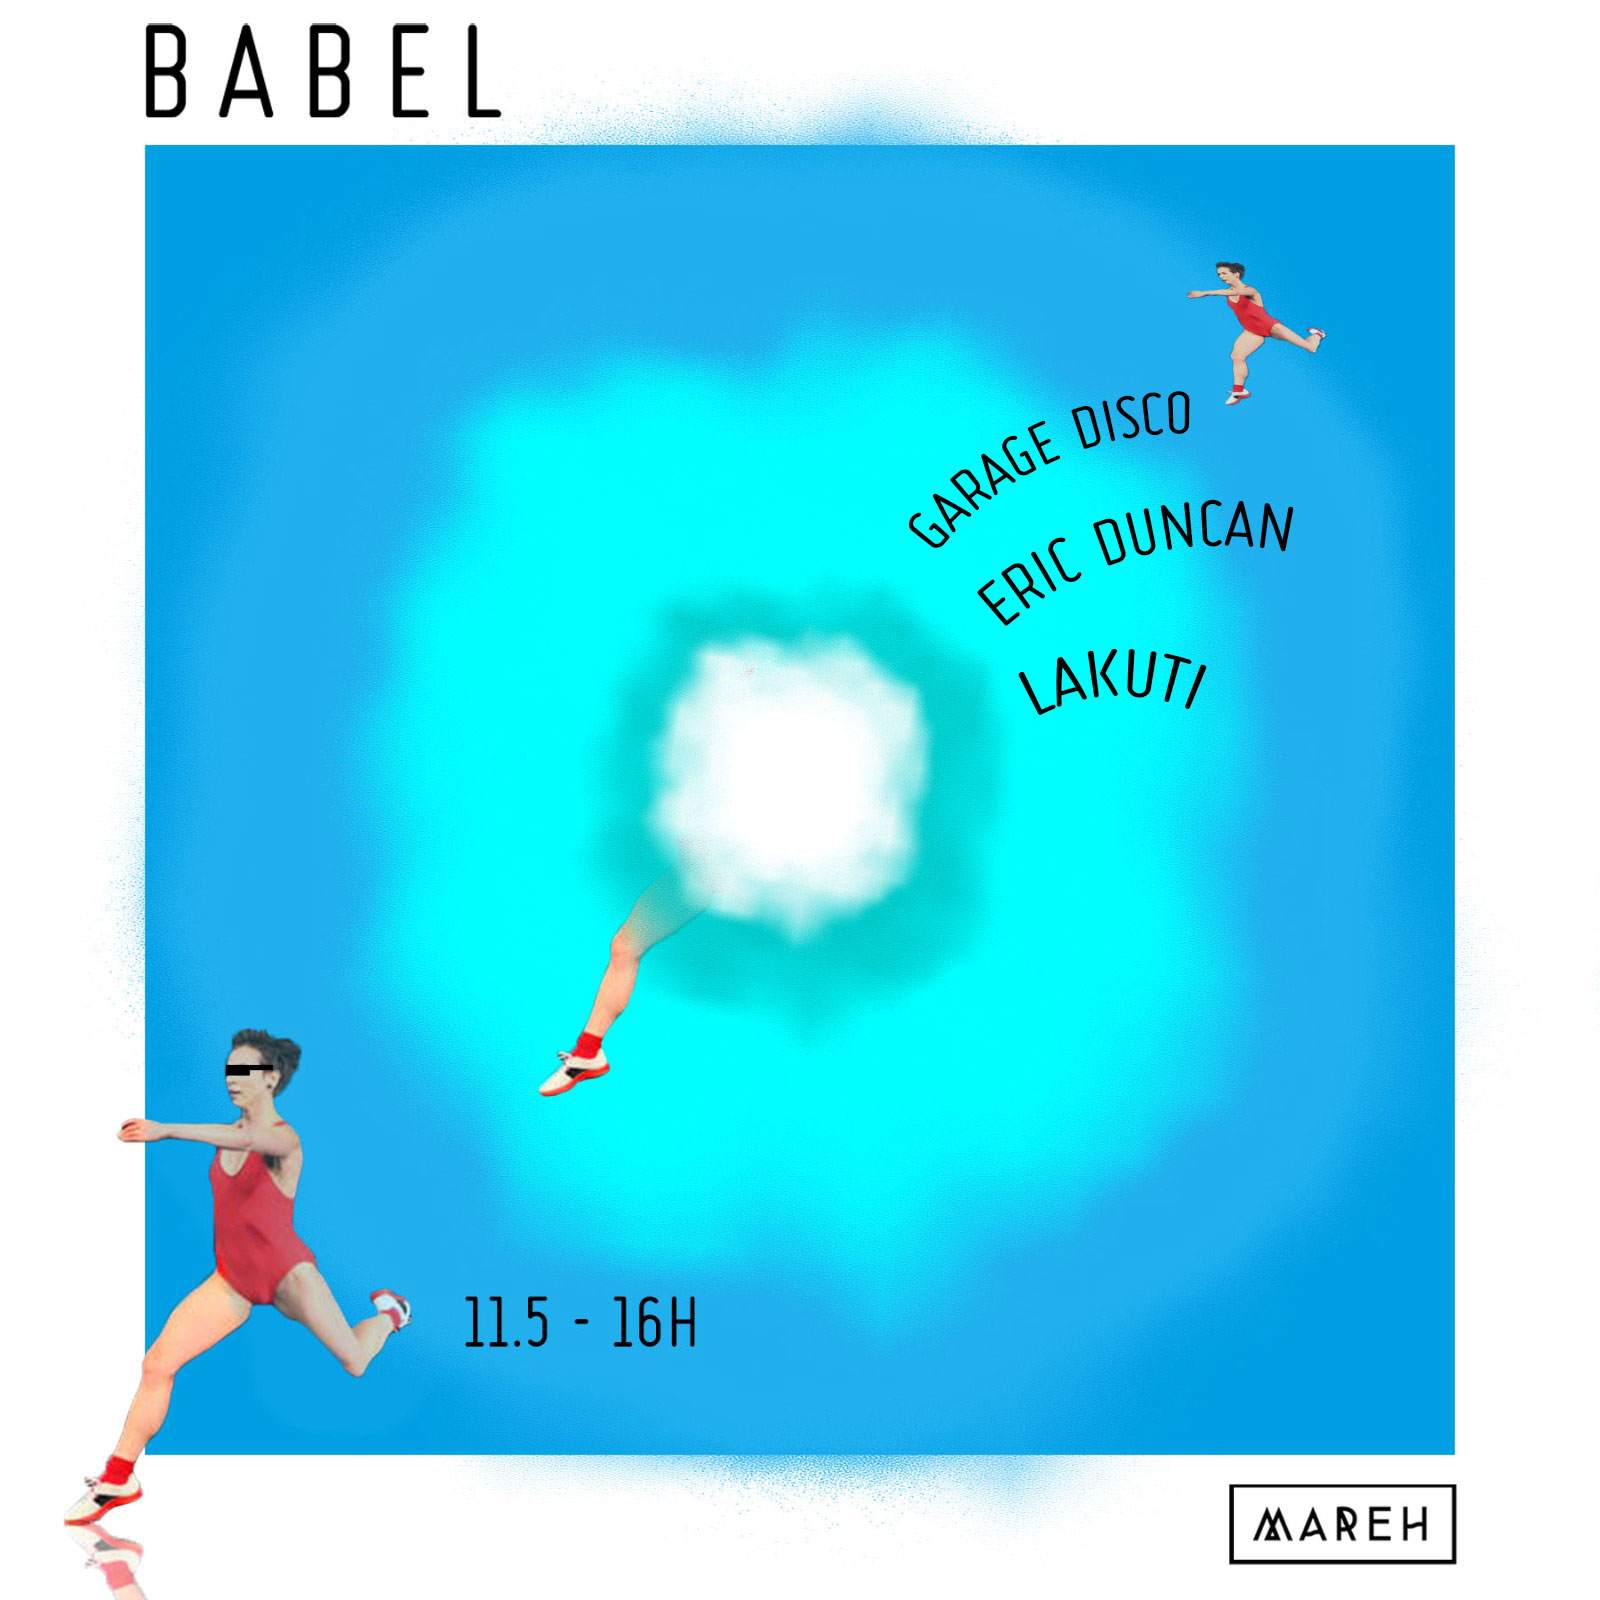 Babel (Mareh Music) - フライヤー表